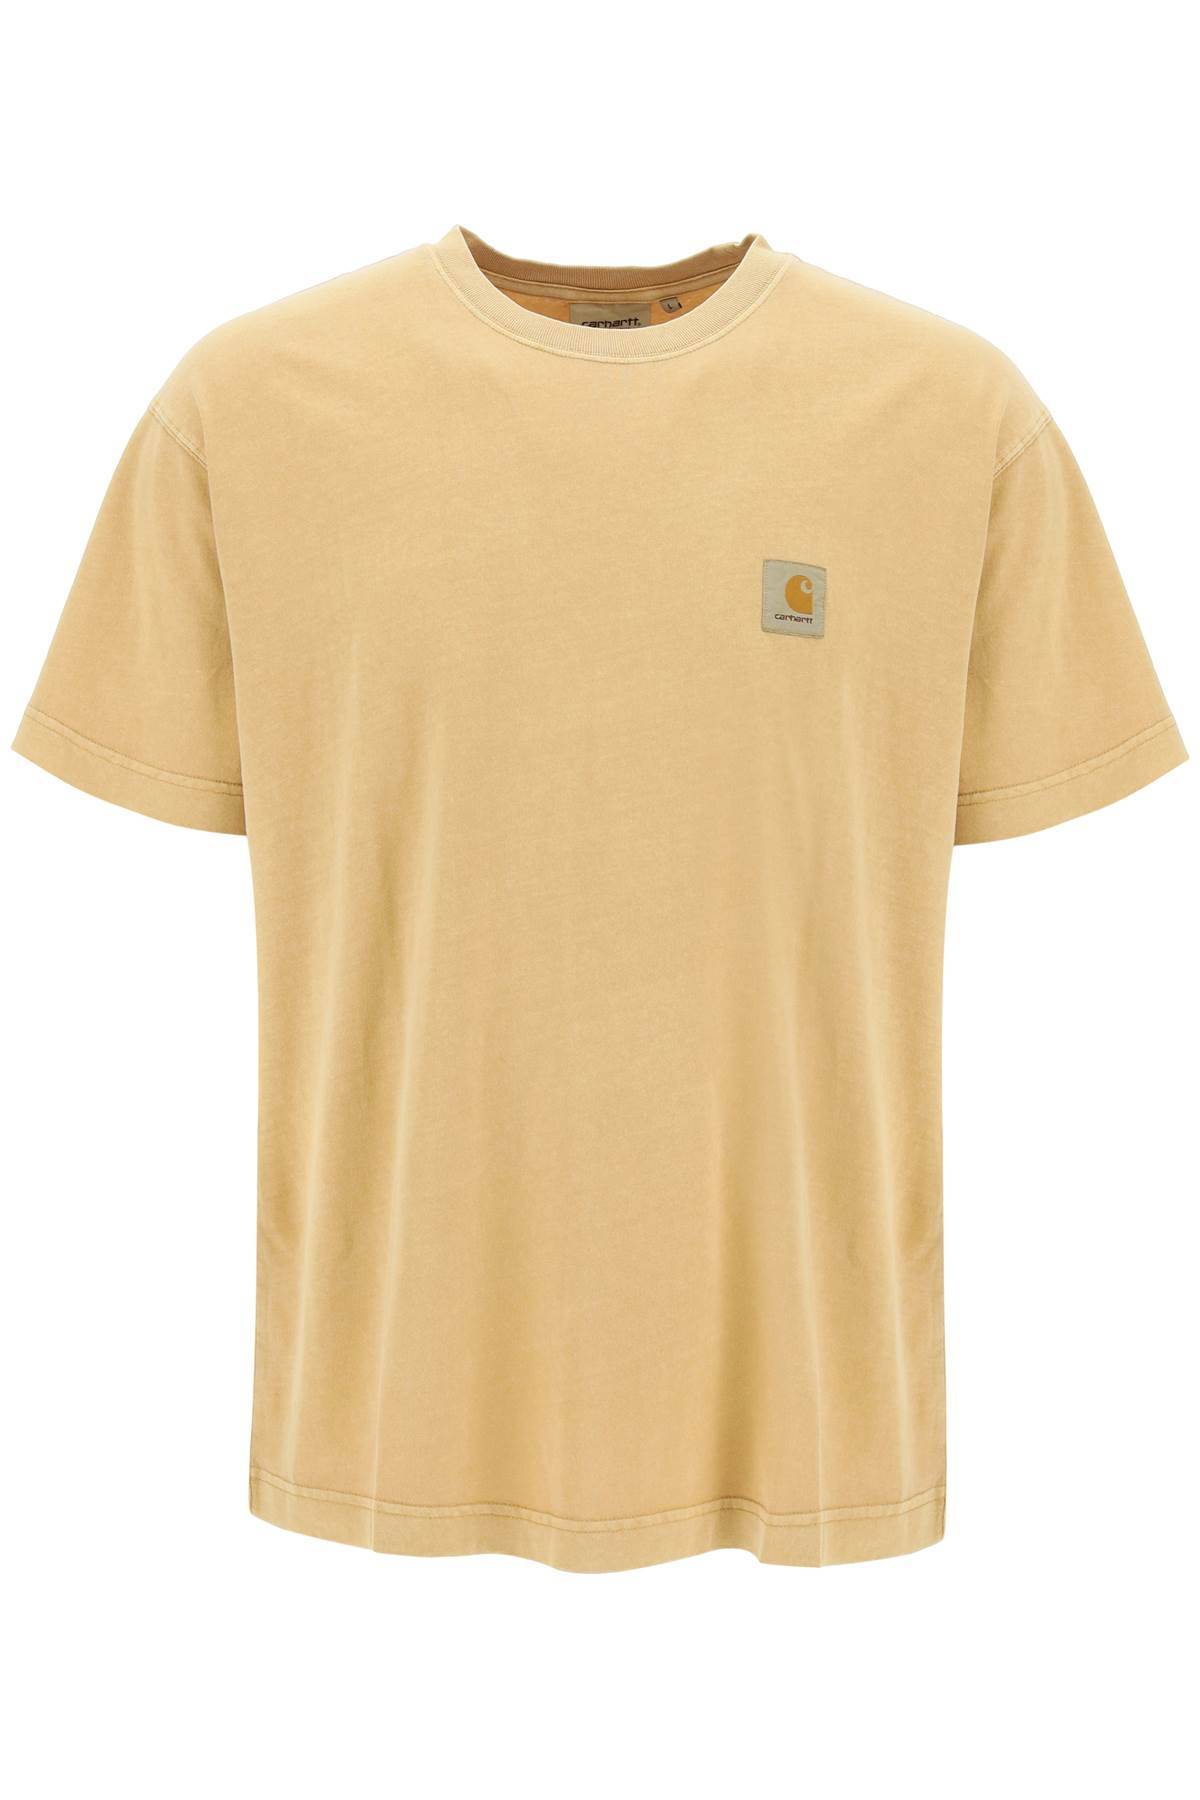 Carhartt WIP CARHARTT WIP nelson t-shirt